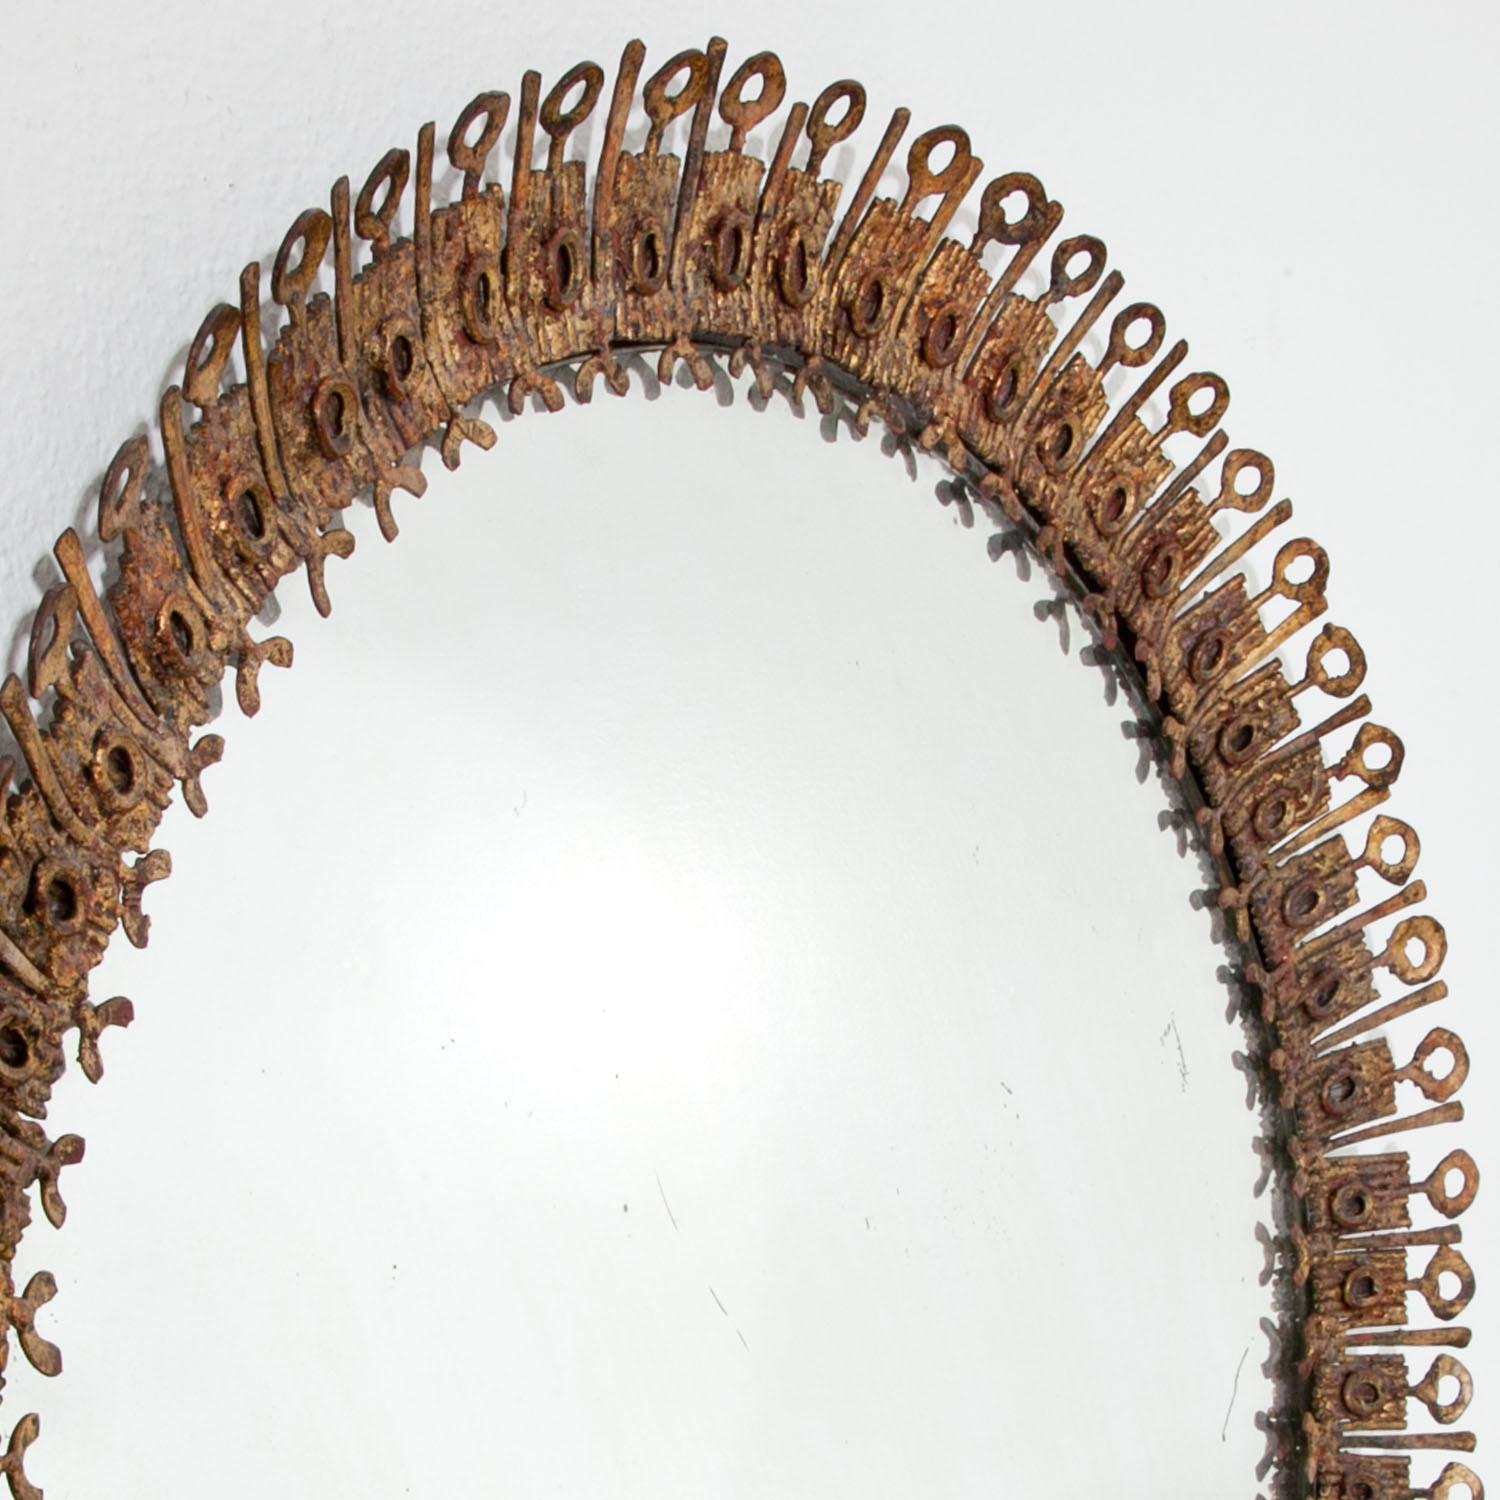 Round brutalist sunburst mirror with an iron frame.